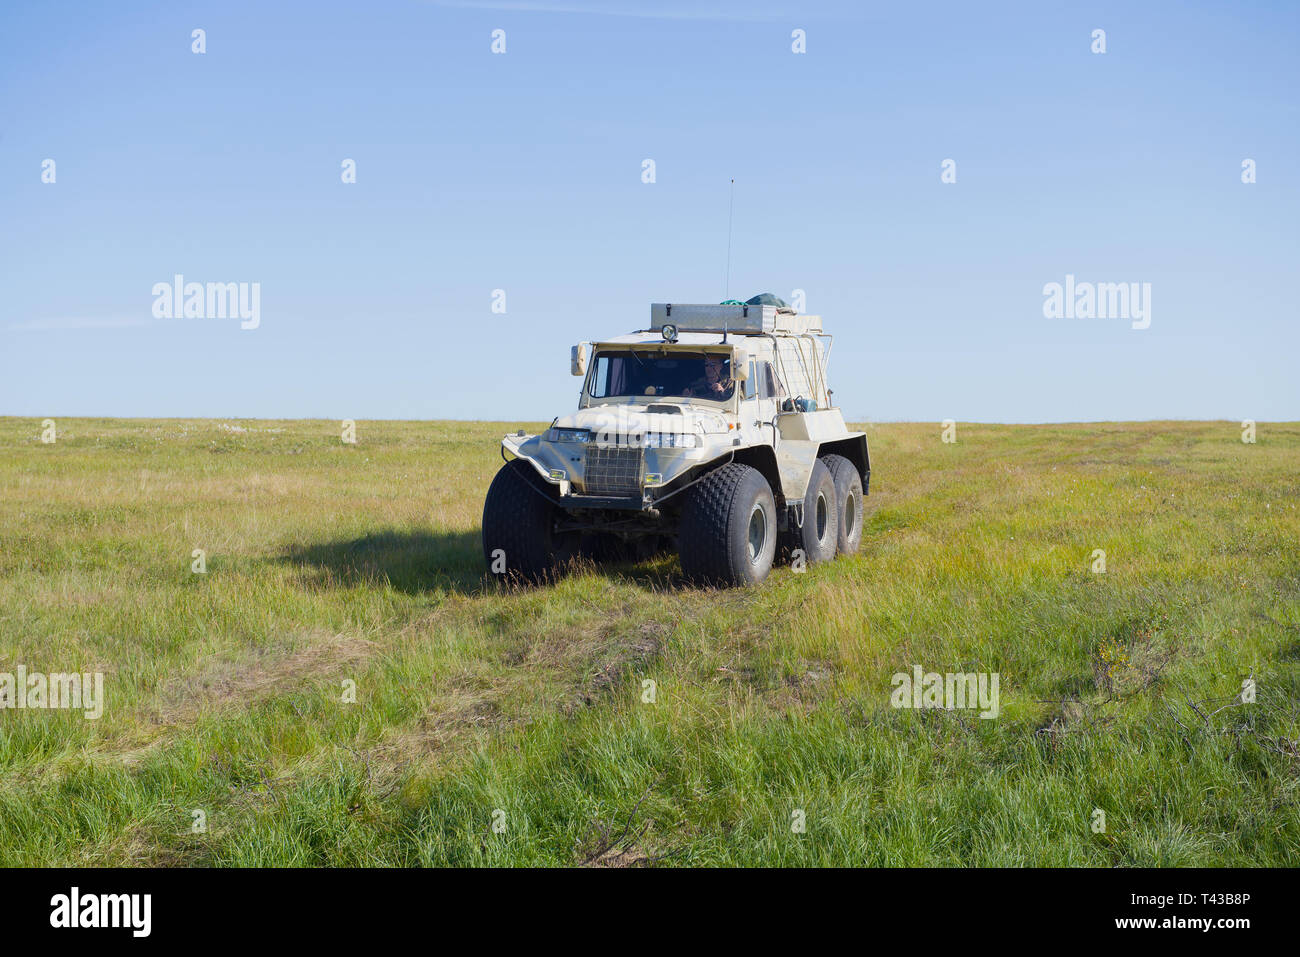 La Russie, Yamal - août 22, 2018 : Trakol véhicule tout-terrain se déplace le long de la toundra, sur une journée ensoleillée Banque D'Images